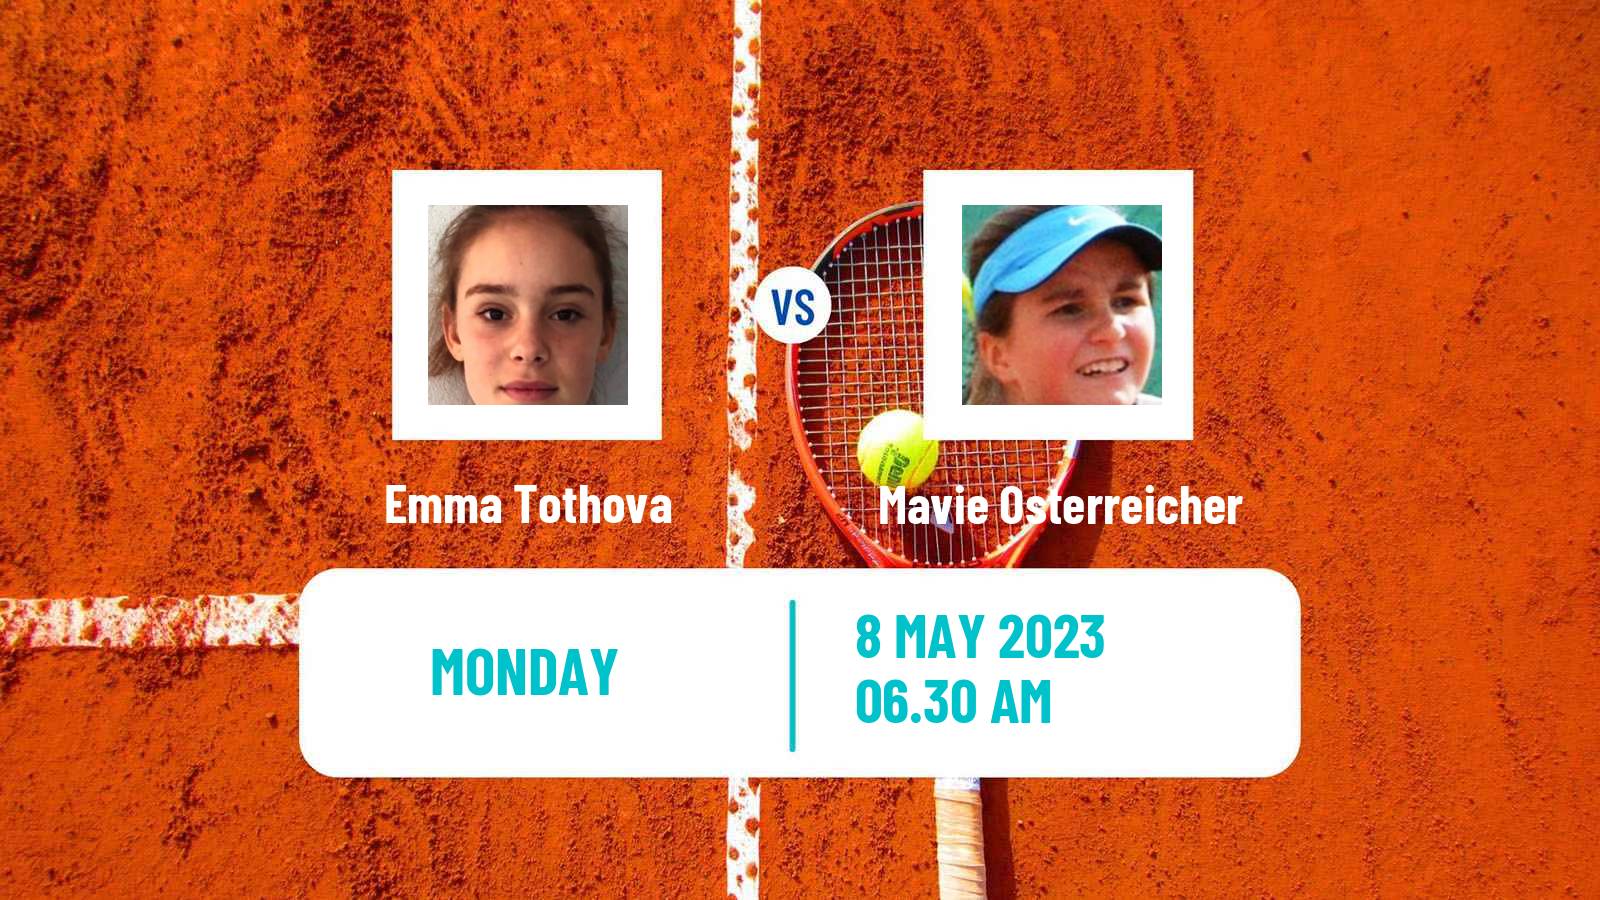 Tennis ITF Tournaments Emma Tothova - Mavie Osterreicher